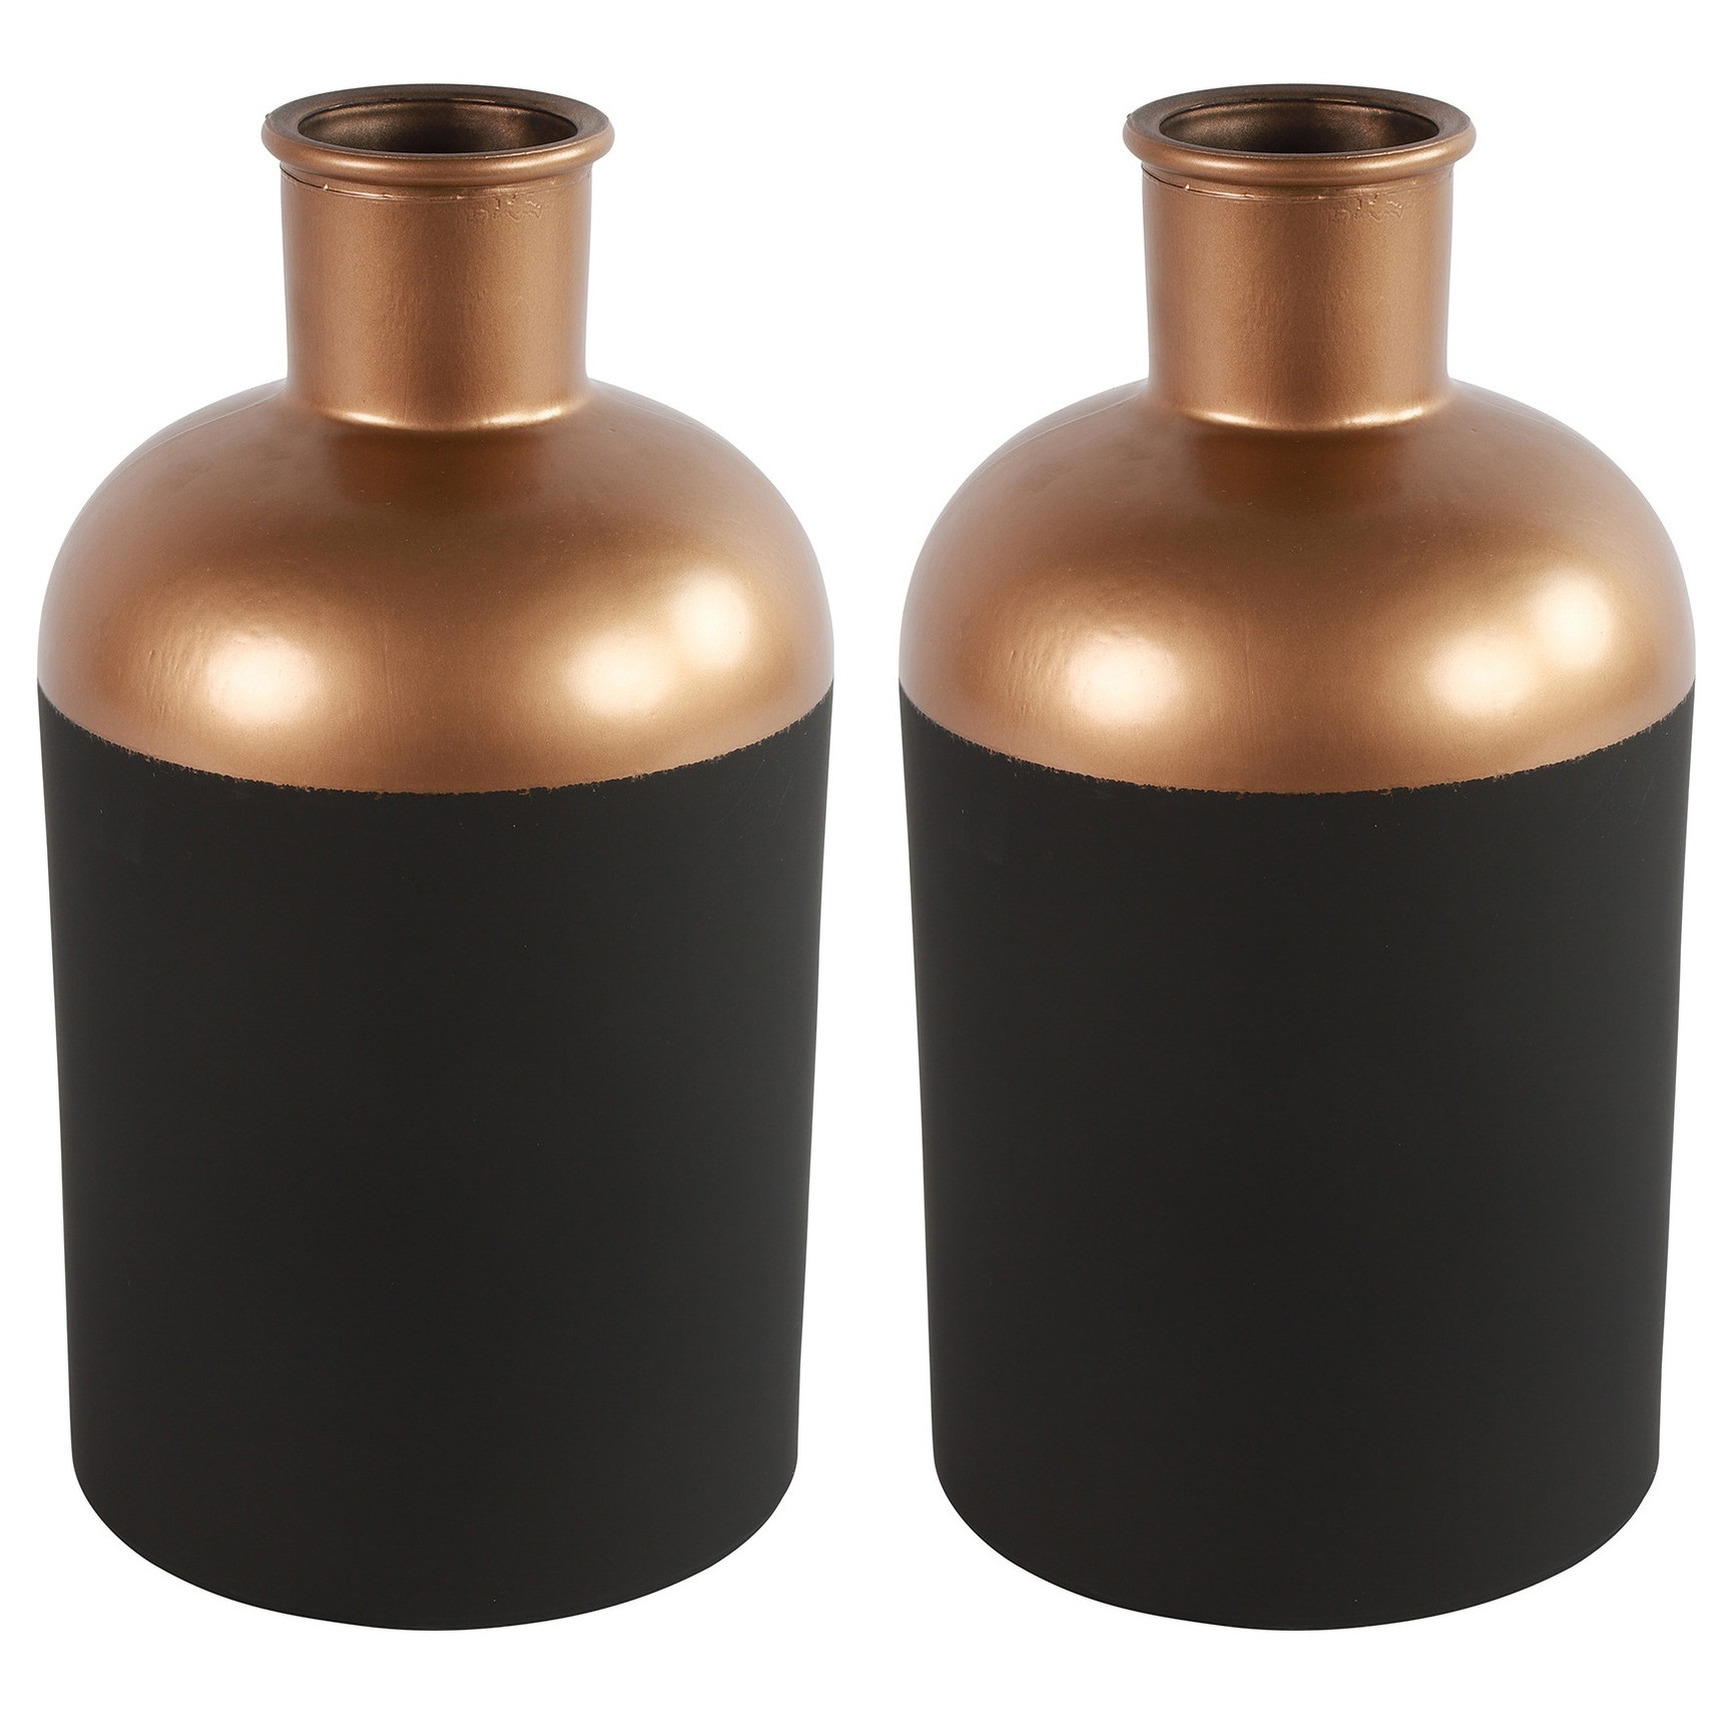 Countryfield Bloemen-deco vaas 2x zwart-koper glas luxe fles vorm D17 x H31 cm